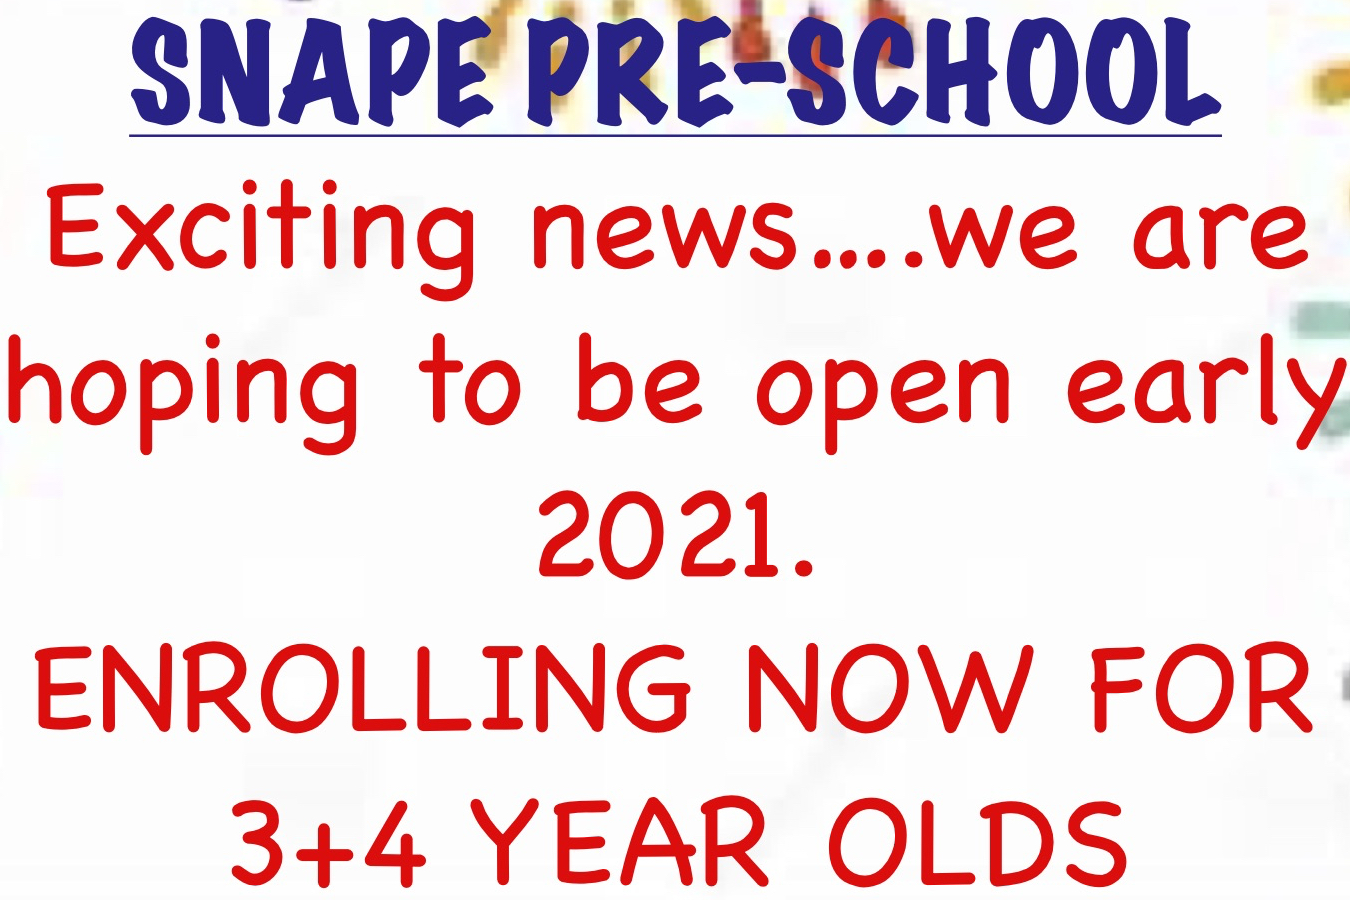 Snape Pre-School, 2021: enrolling now!